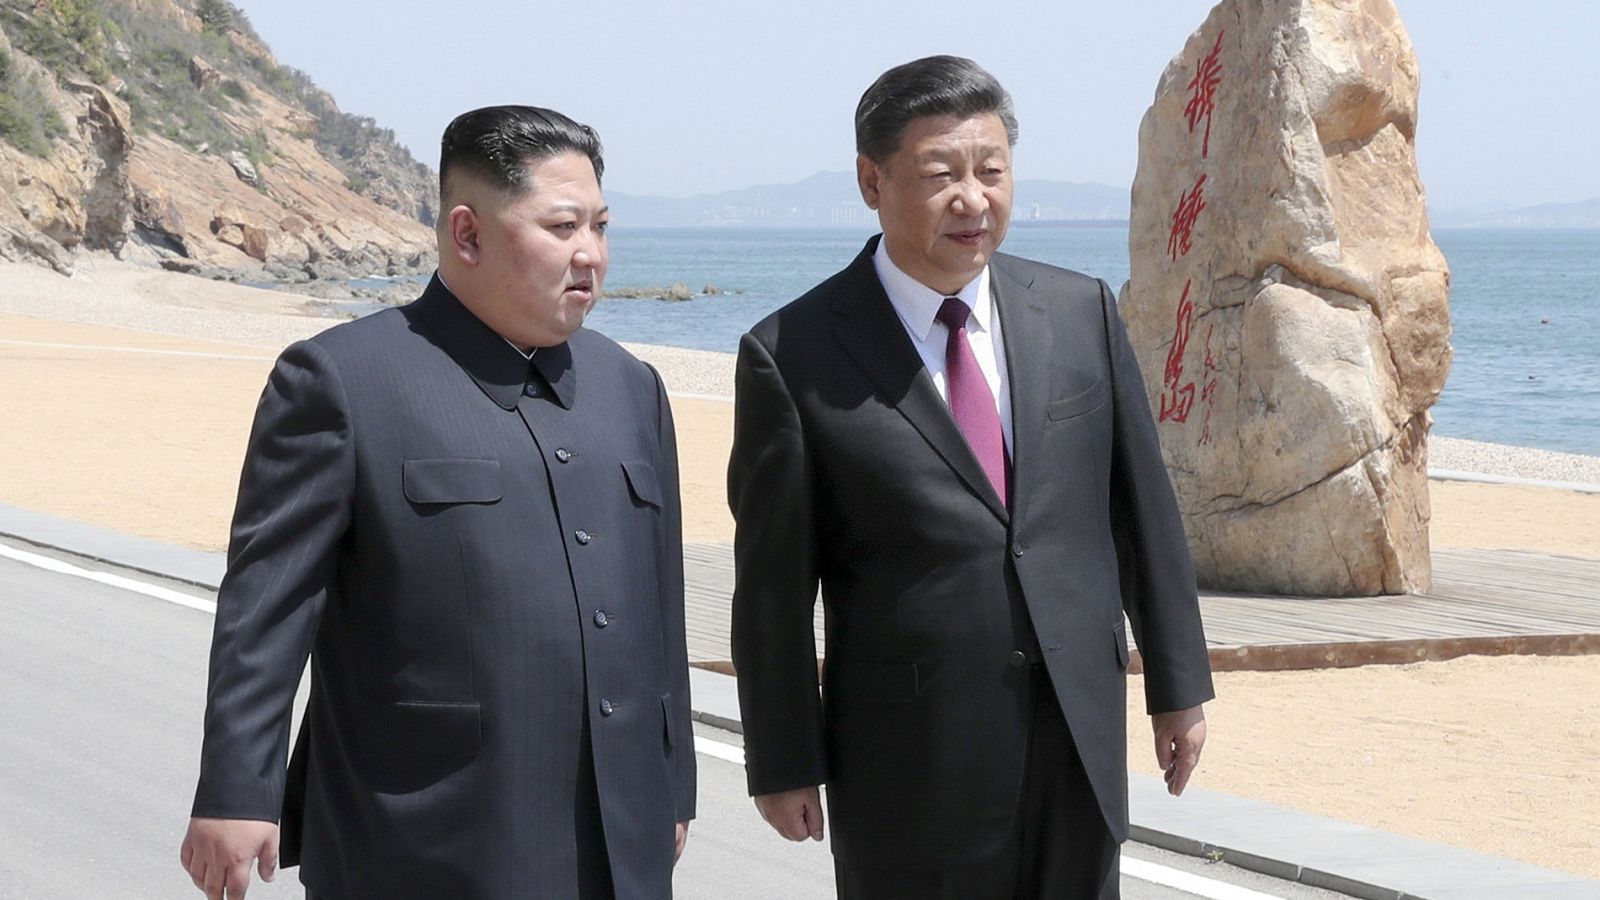 El presidente chino Xi Jinping y su homólogo norcoreano Kim Jong-un pasean en Dalian, China